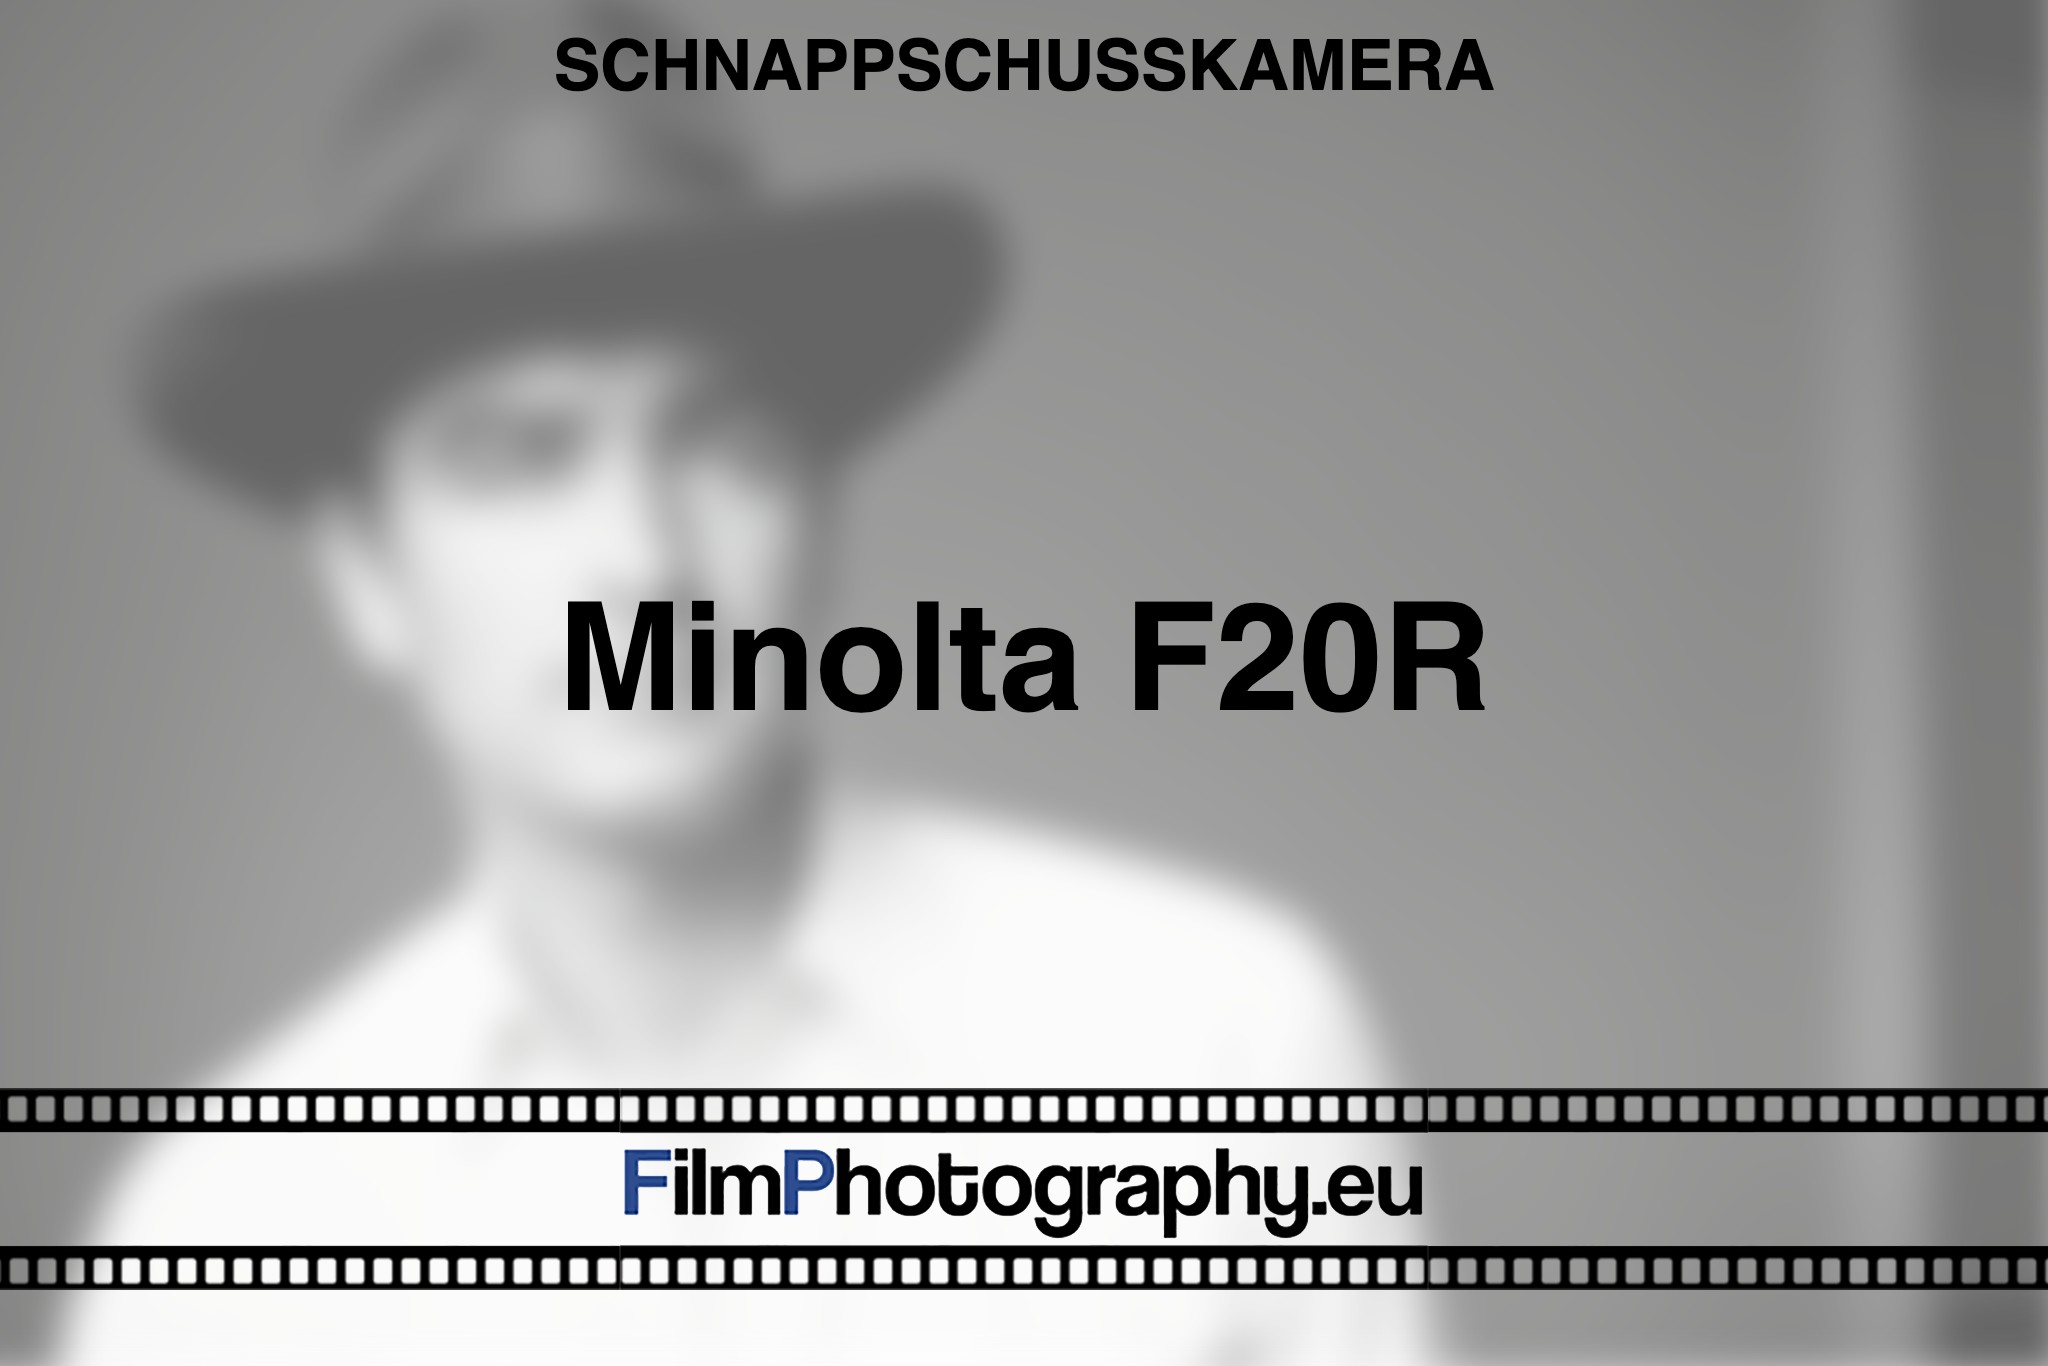 minolta-f20r-schnappschusskamera-bnv